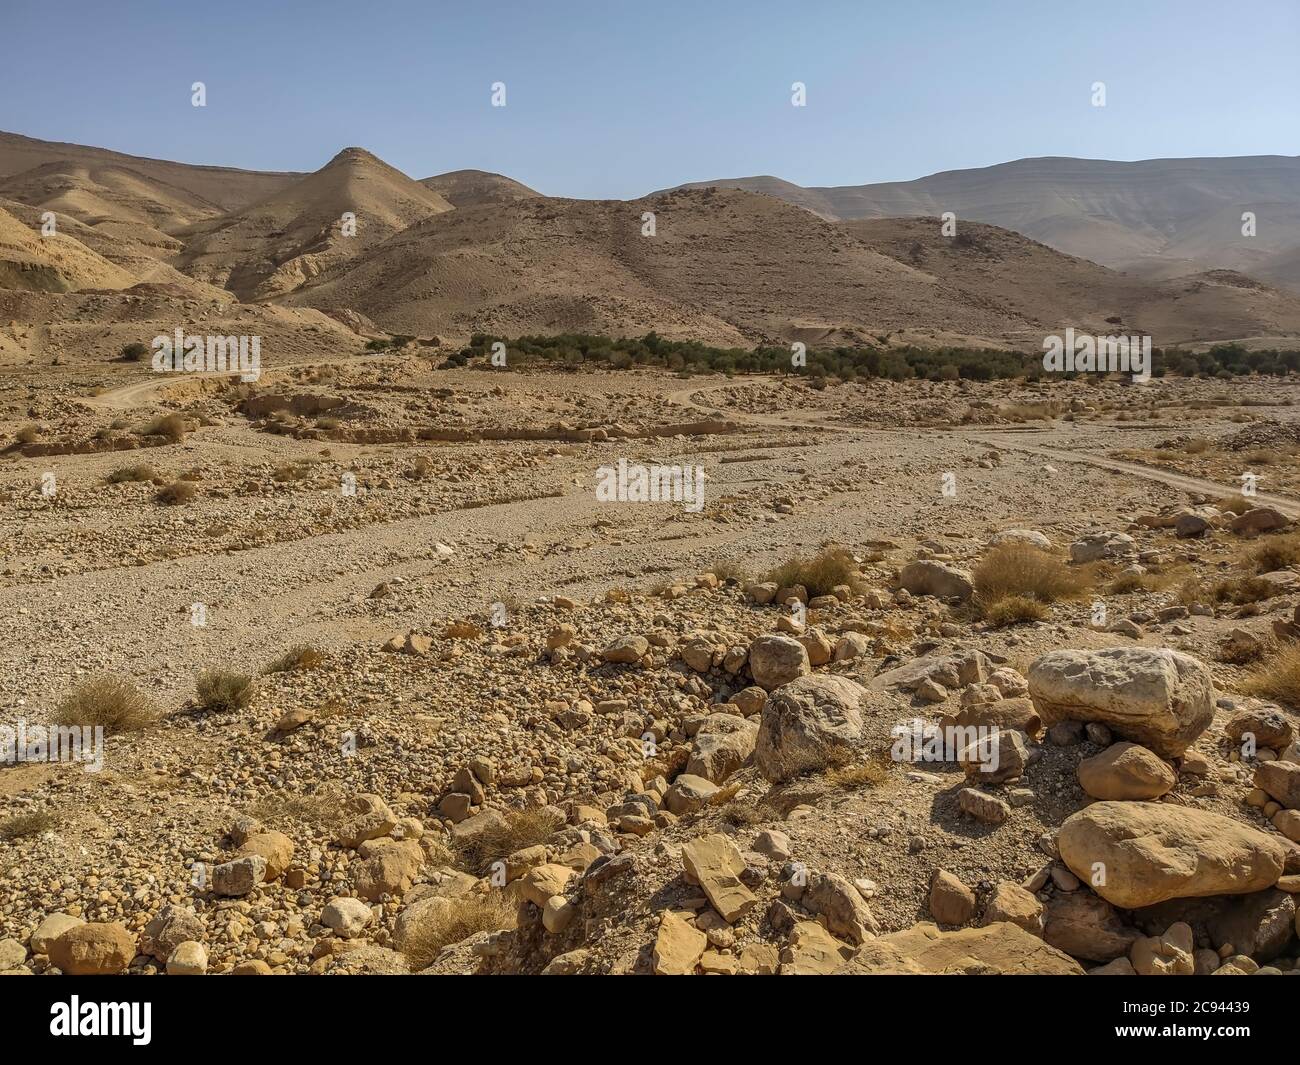 Wadi al Hasa in Jordan - dry river bed Stock Photo